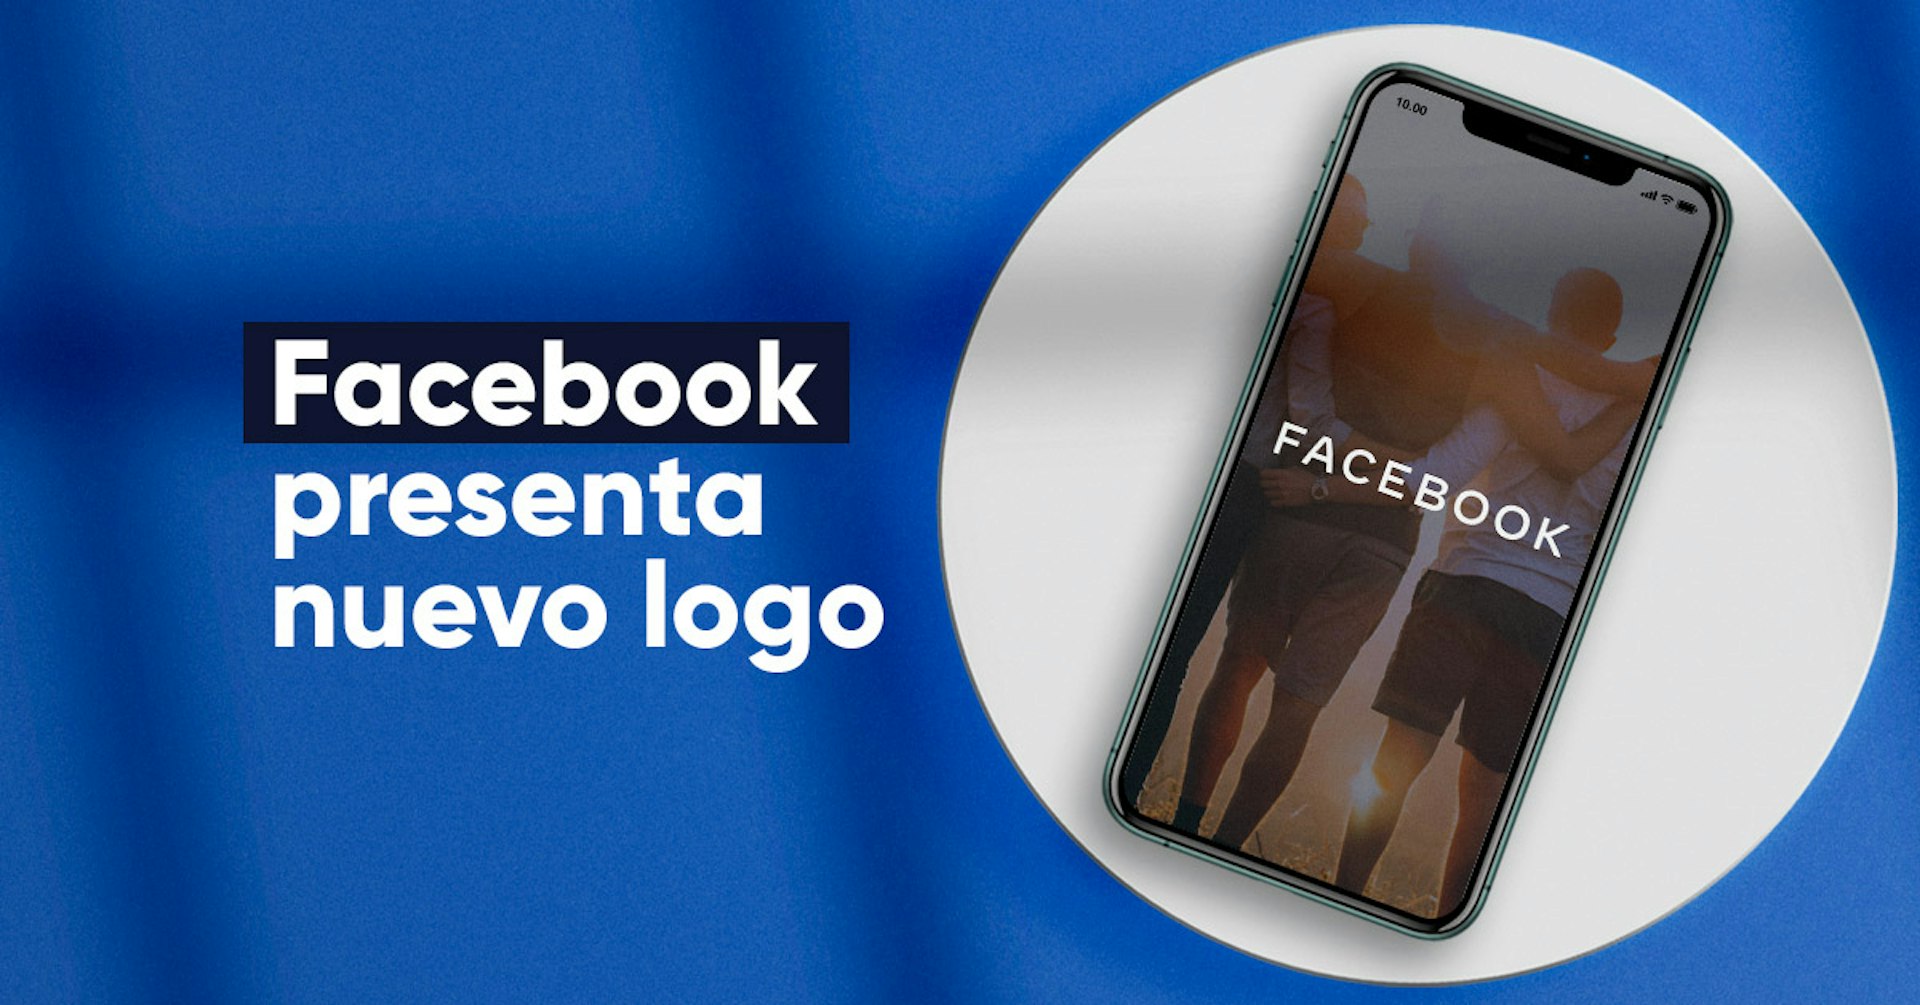 Facebook presenta nuevo logo